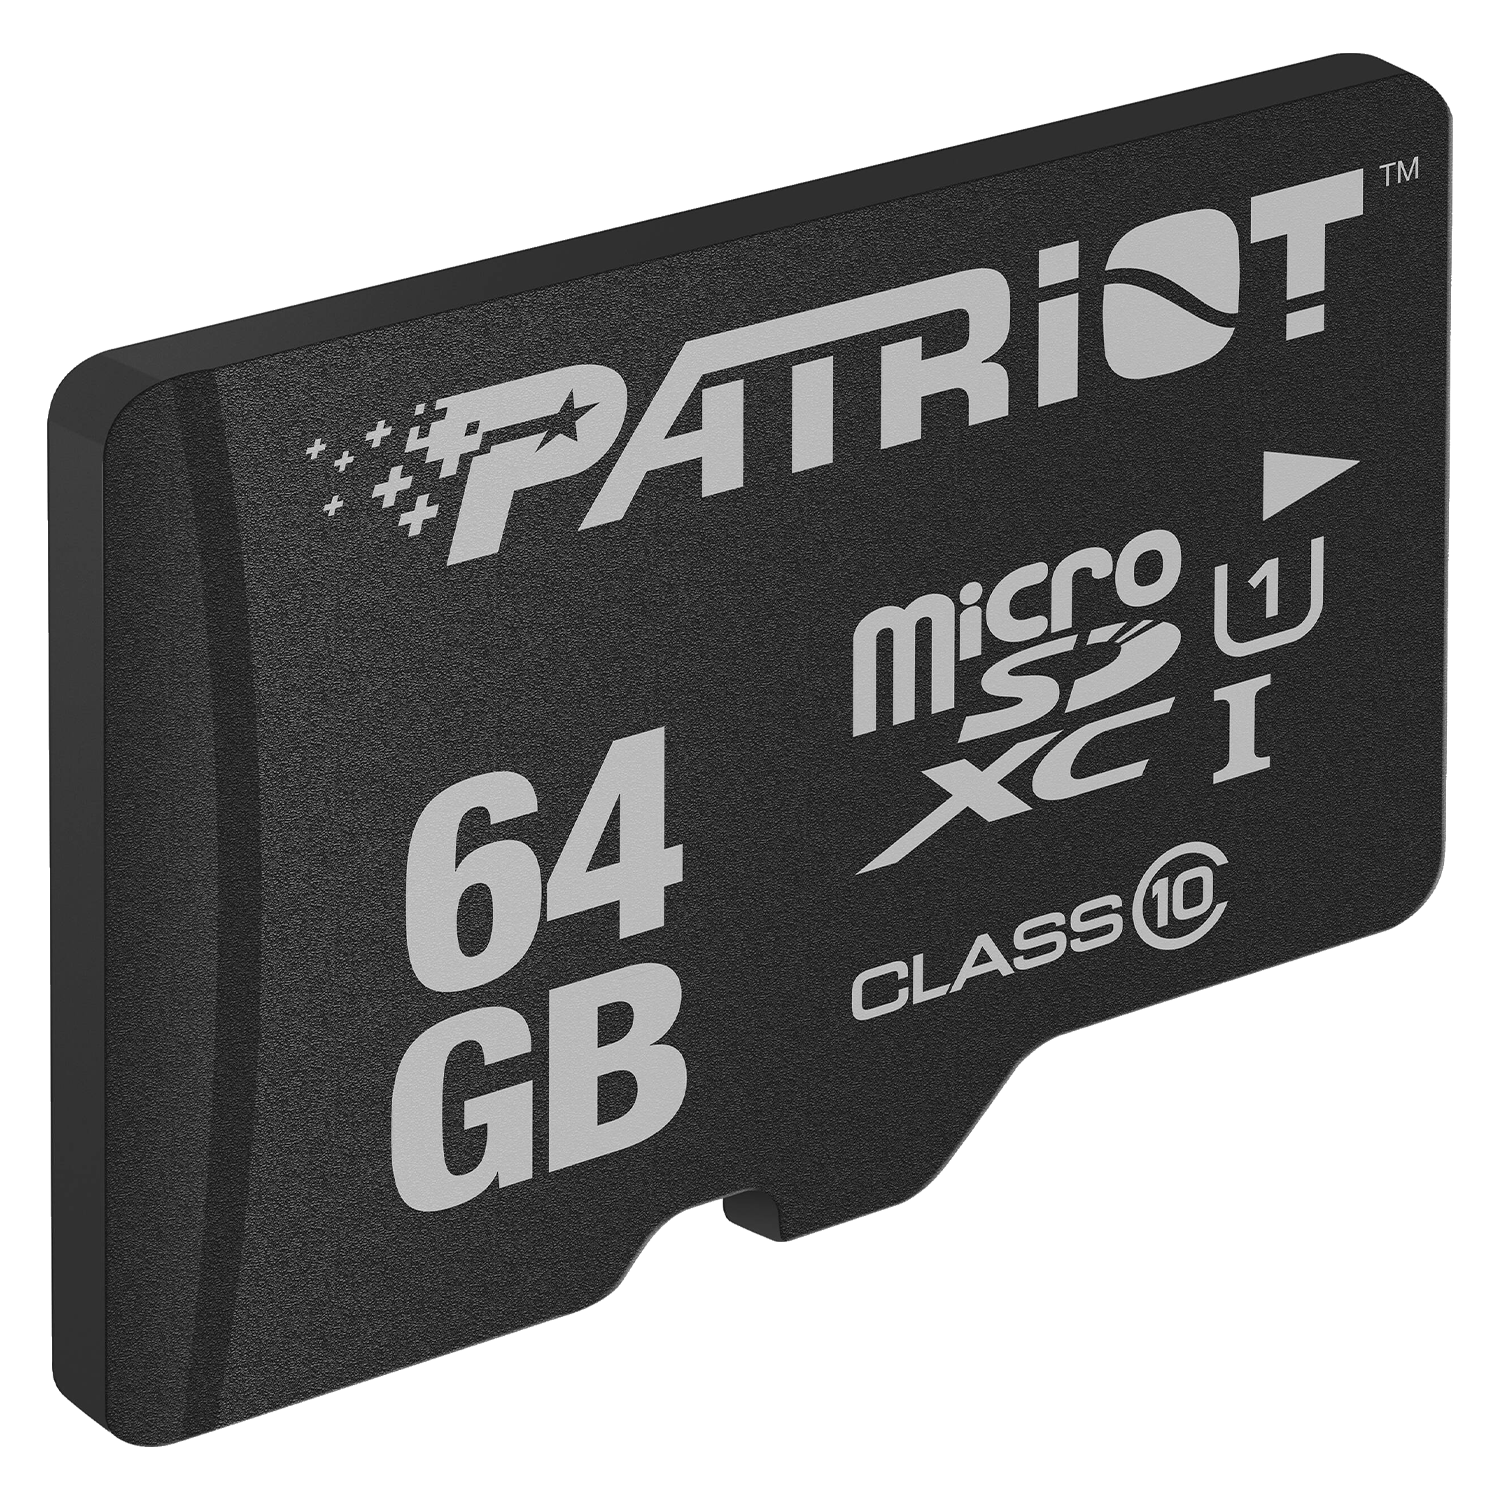 Cartão de Memória Micro SD Patriot LX Series 64GB / C10 / U1 / SDXC - (PSF64GMDC10)